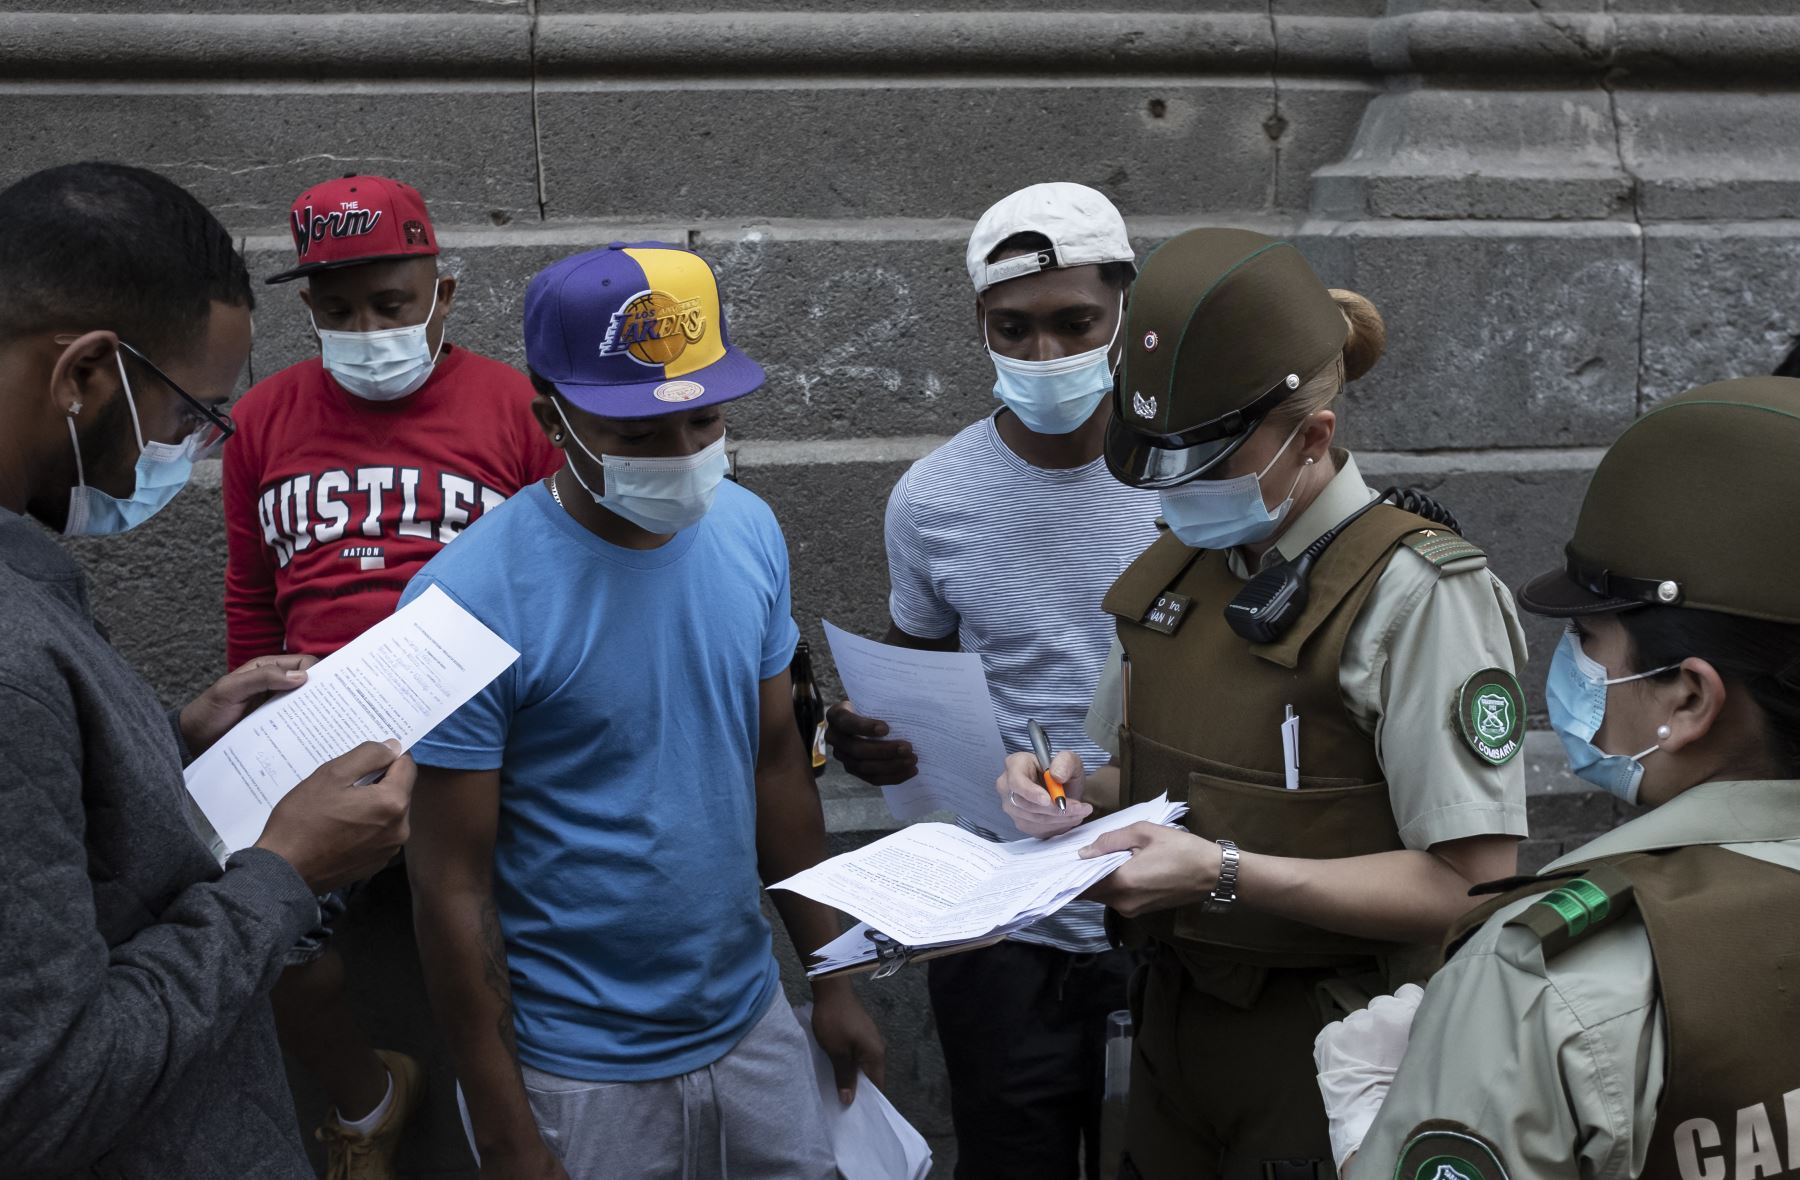 La nueva ley, promulgada el domingo después de ocho años de tramitación en el Congreso, busca, según el presidente Sebastián Piñera, "ordenar la casa". Foto: AFP.